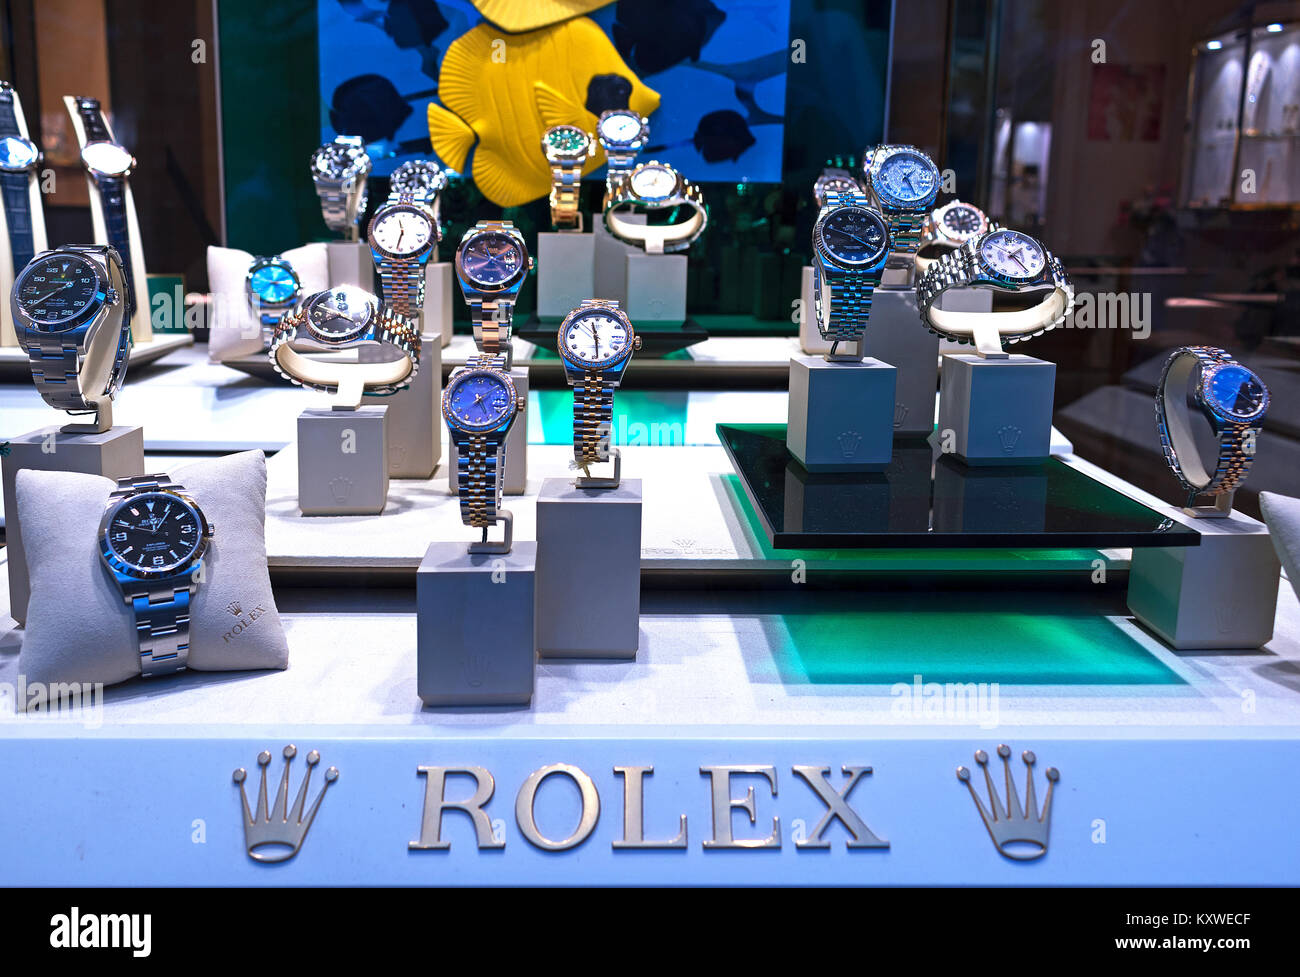 rolex watch shop